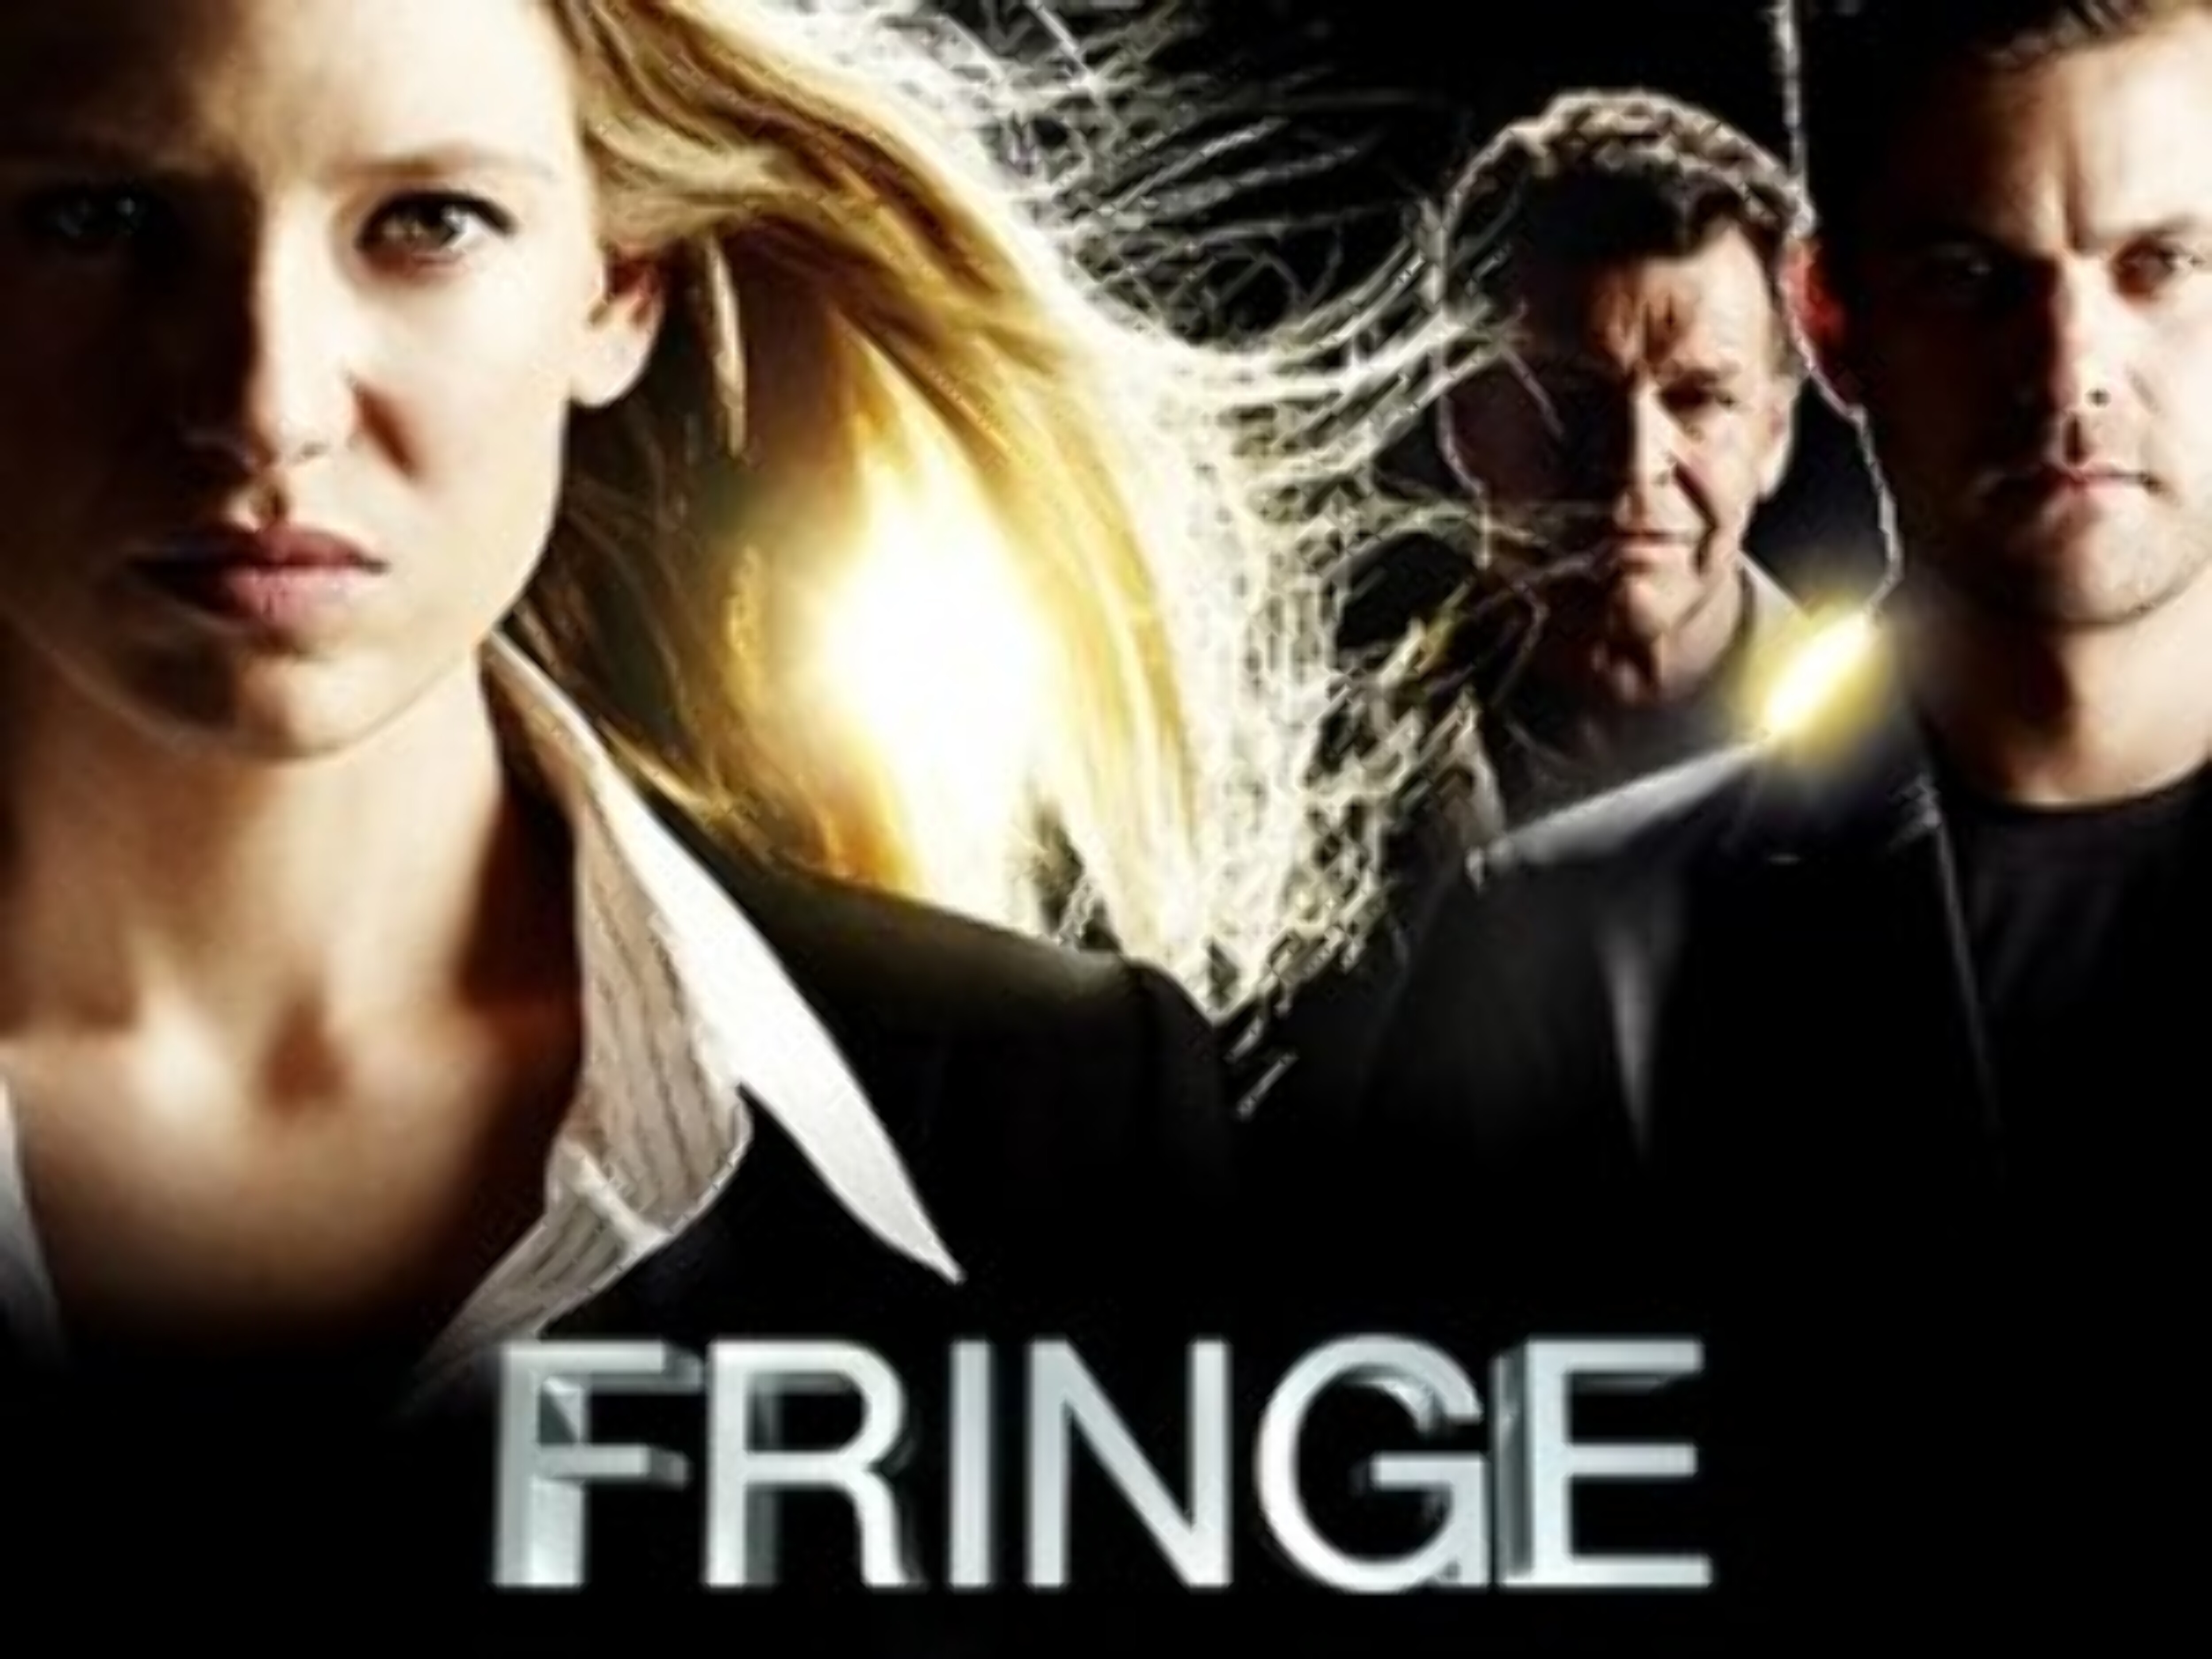 Fringe Season 5 Episode 8